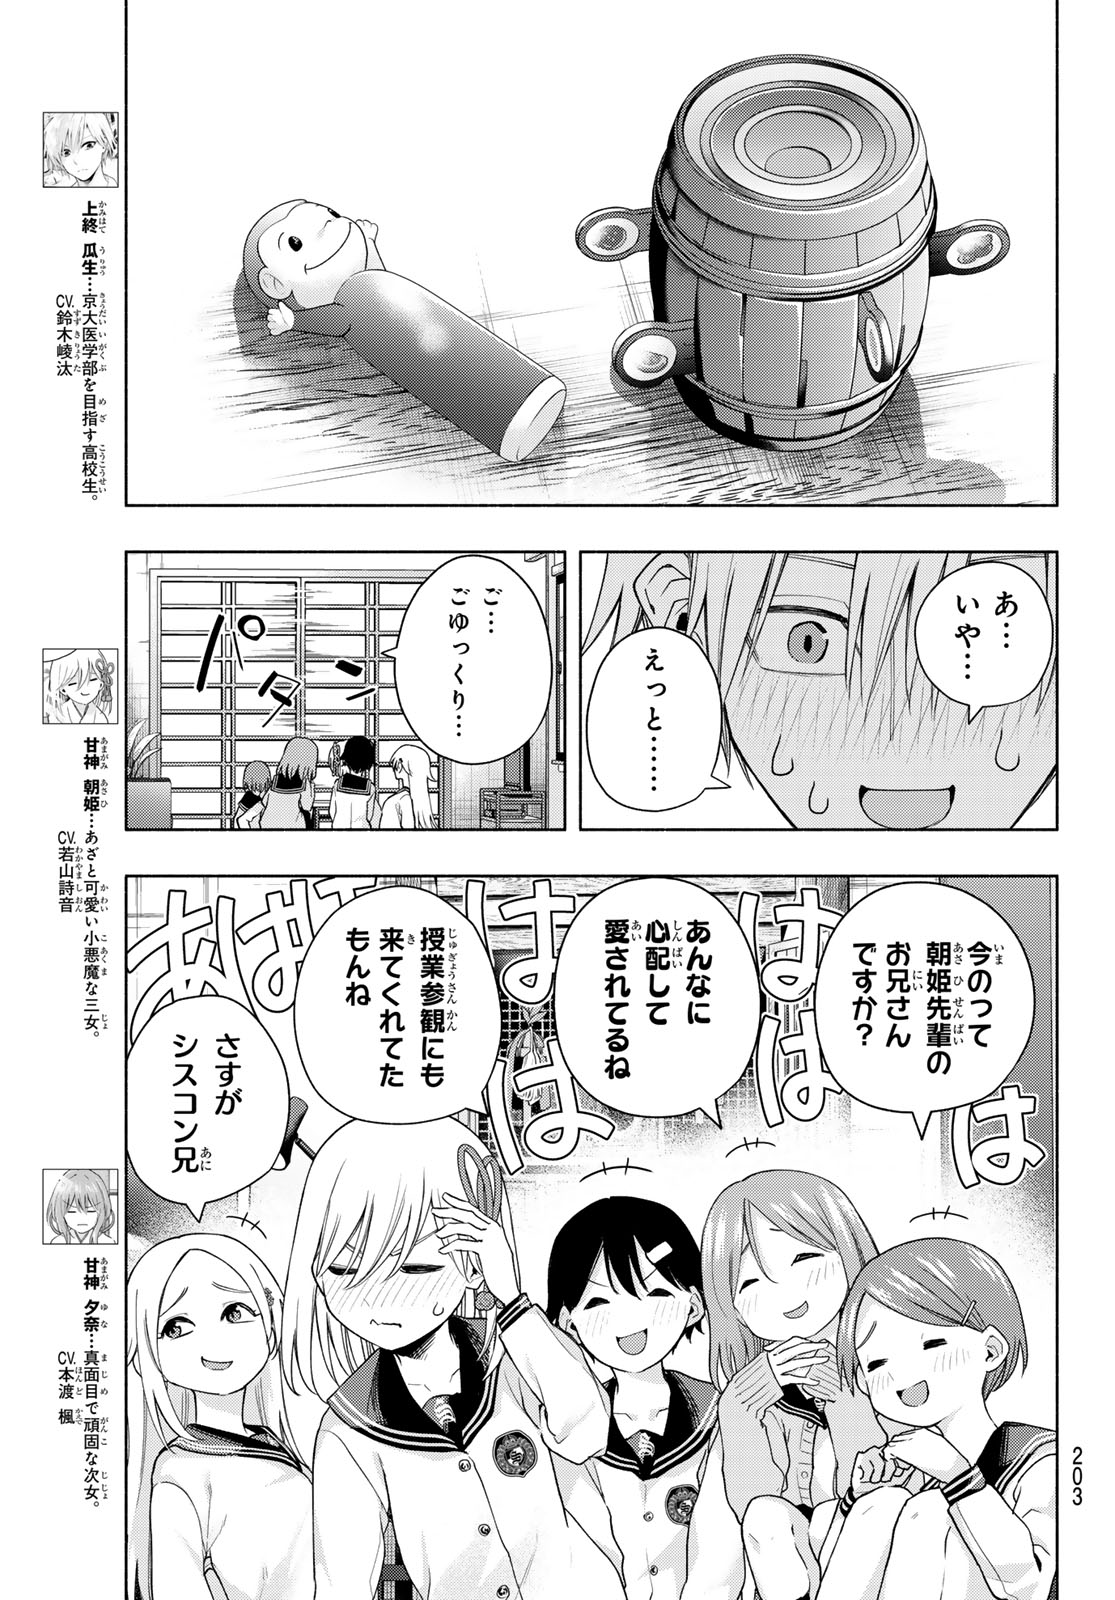 Amagami-san Chi no Enmusubi - Chapter 129 - Page 3